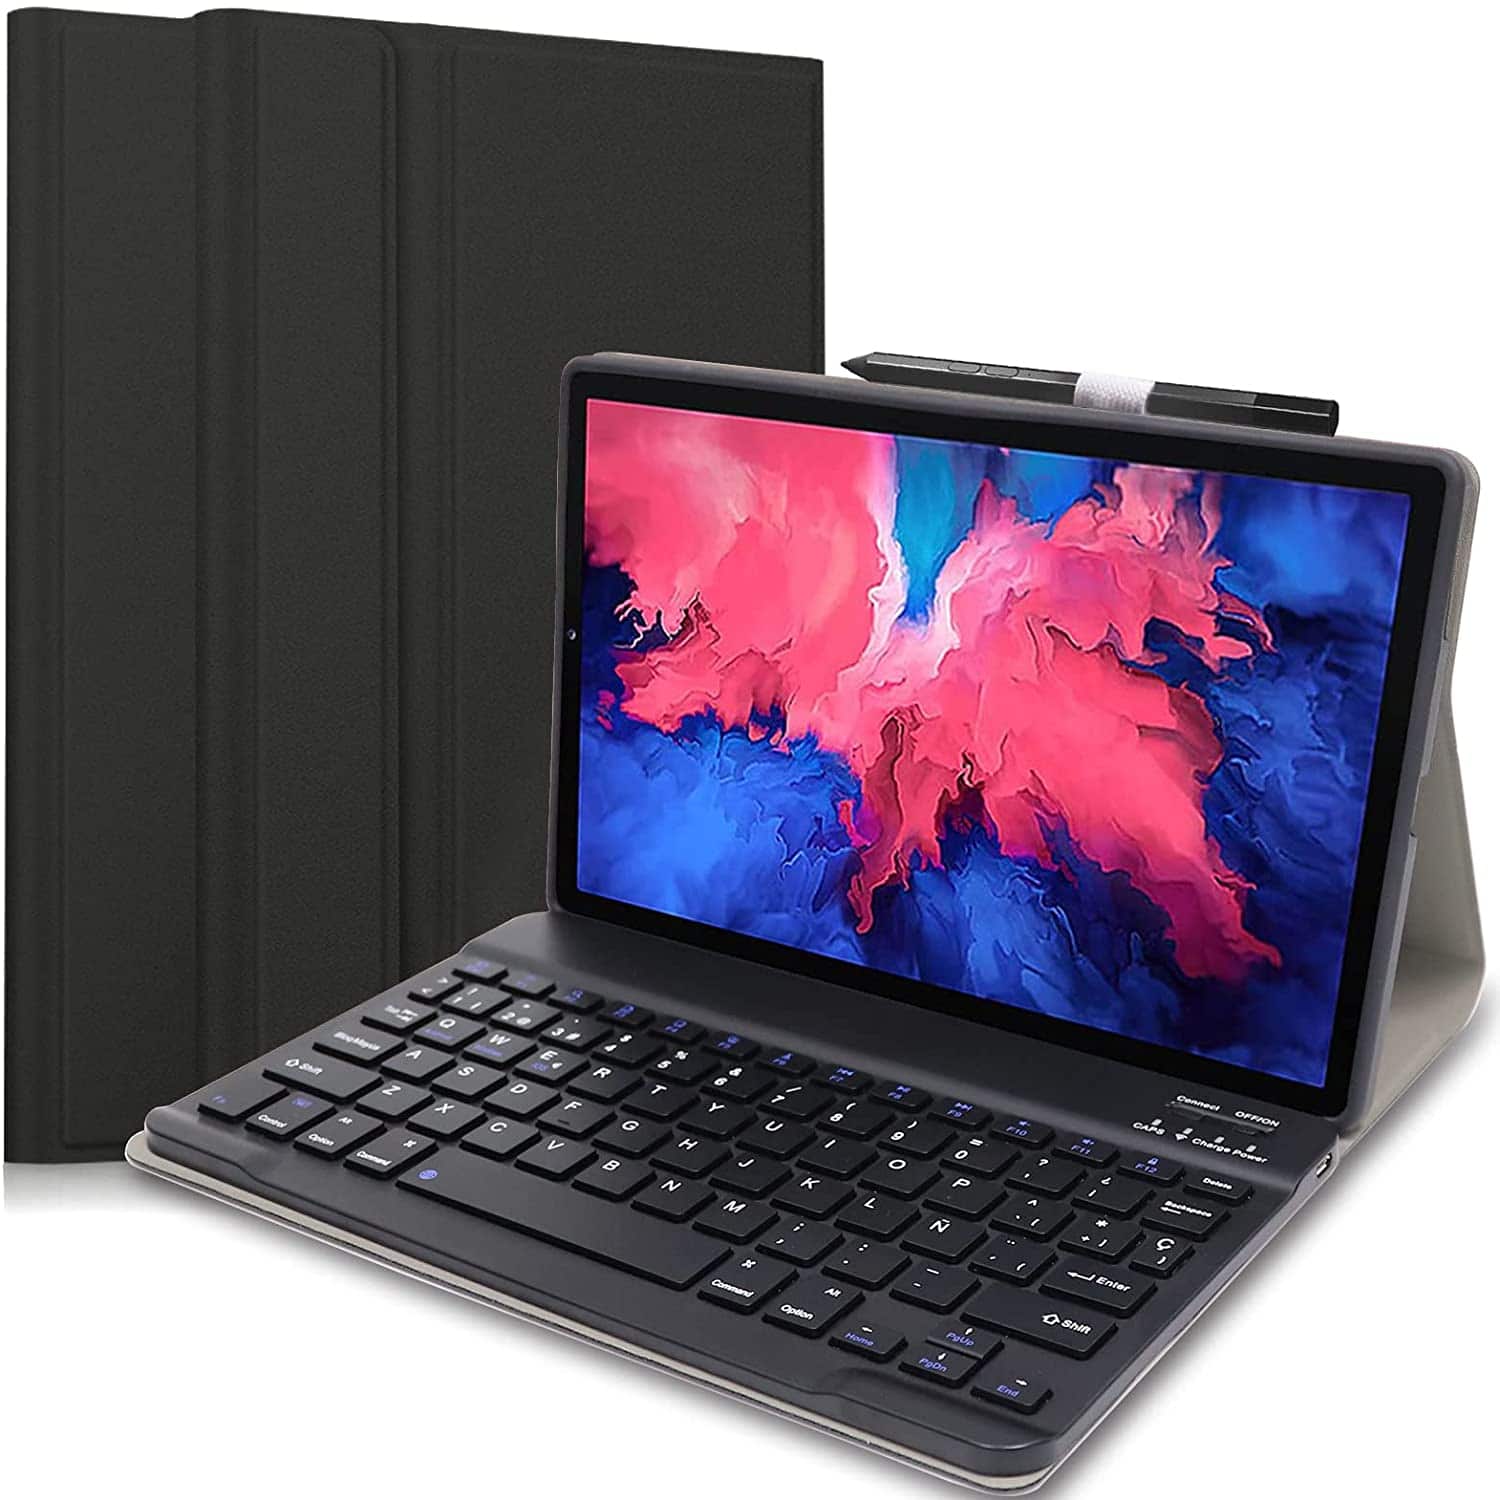 Comparativa: ¿Cuál es el Mejor Teclado para Tablet Lenovo?